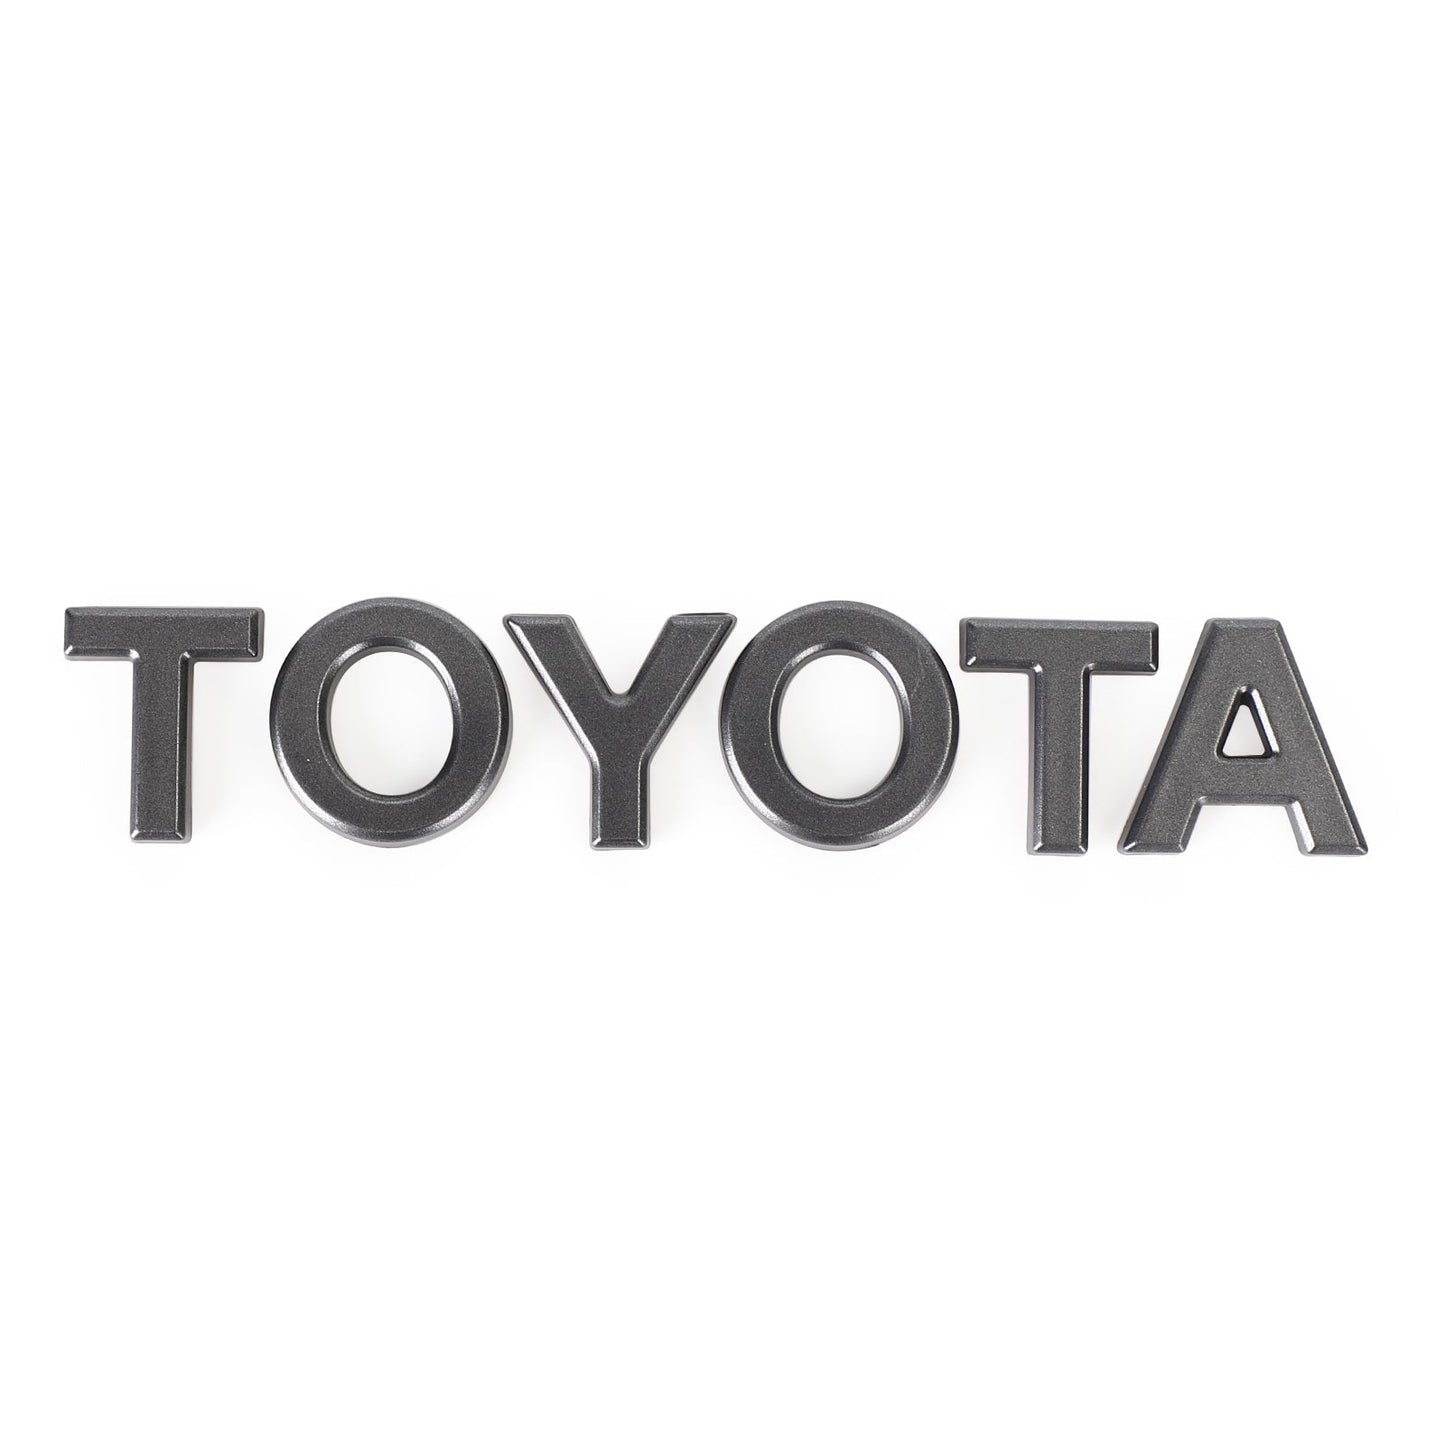 Toyota 4Runner | TRD PRO KURNE | Vordere Stoßfänger Kühlergrill | 2020-2024 | 2 Stück | Schwarz + Toyota Brief